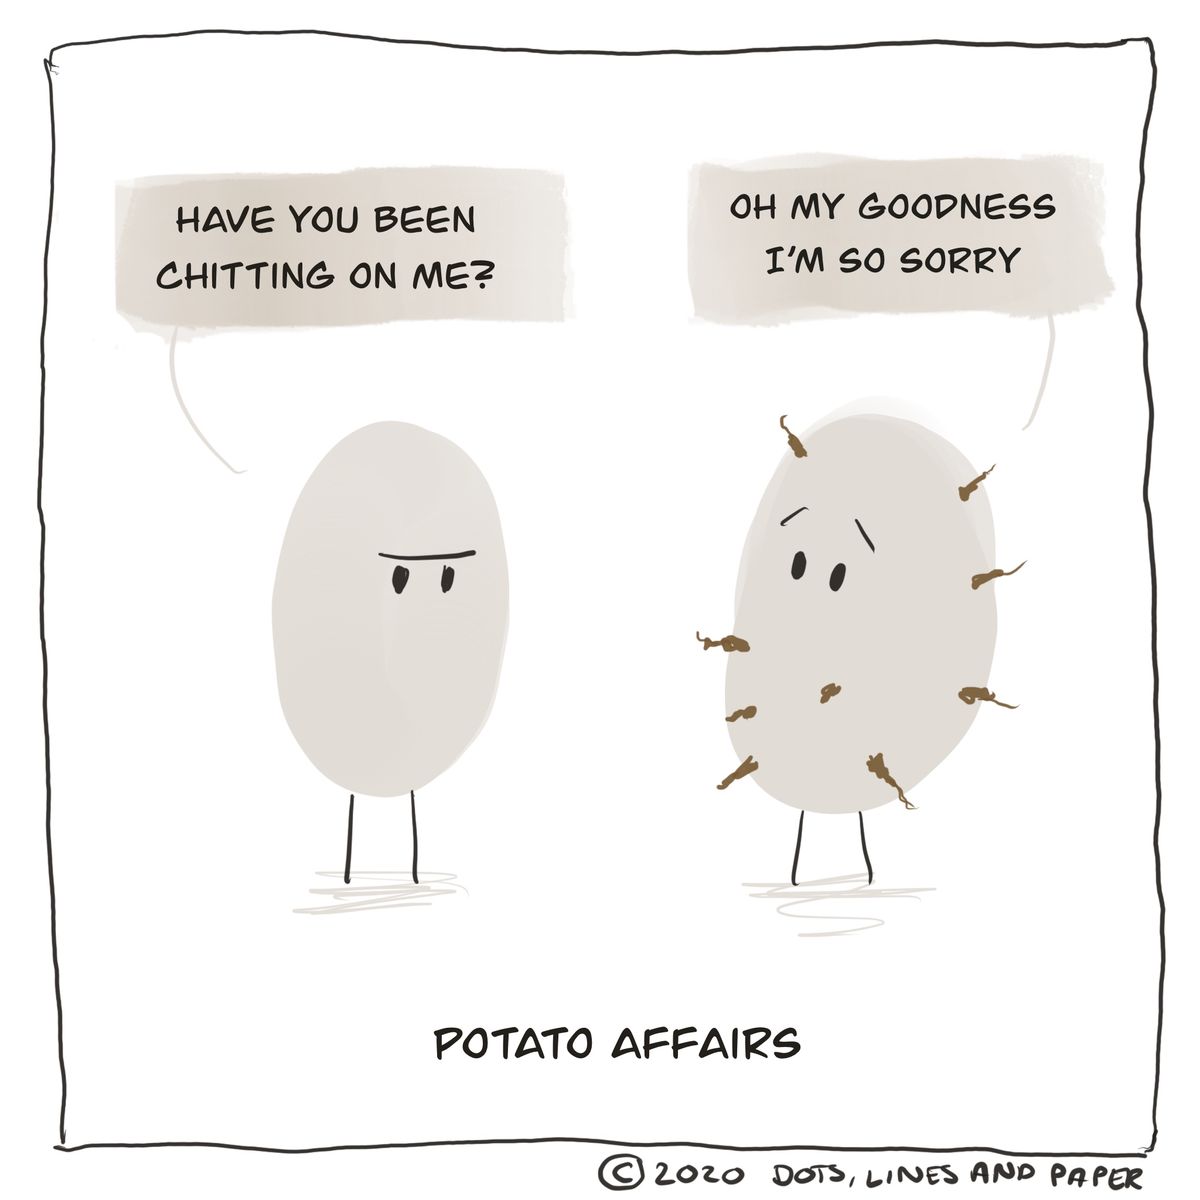 Potato affair